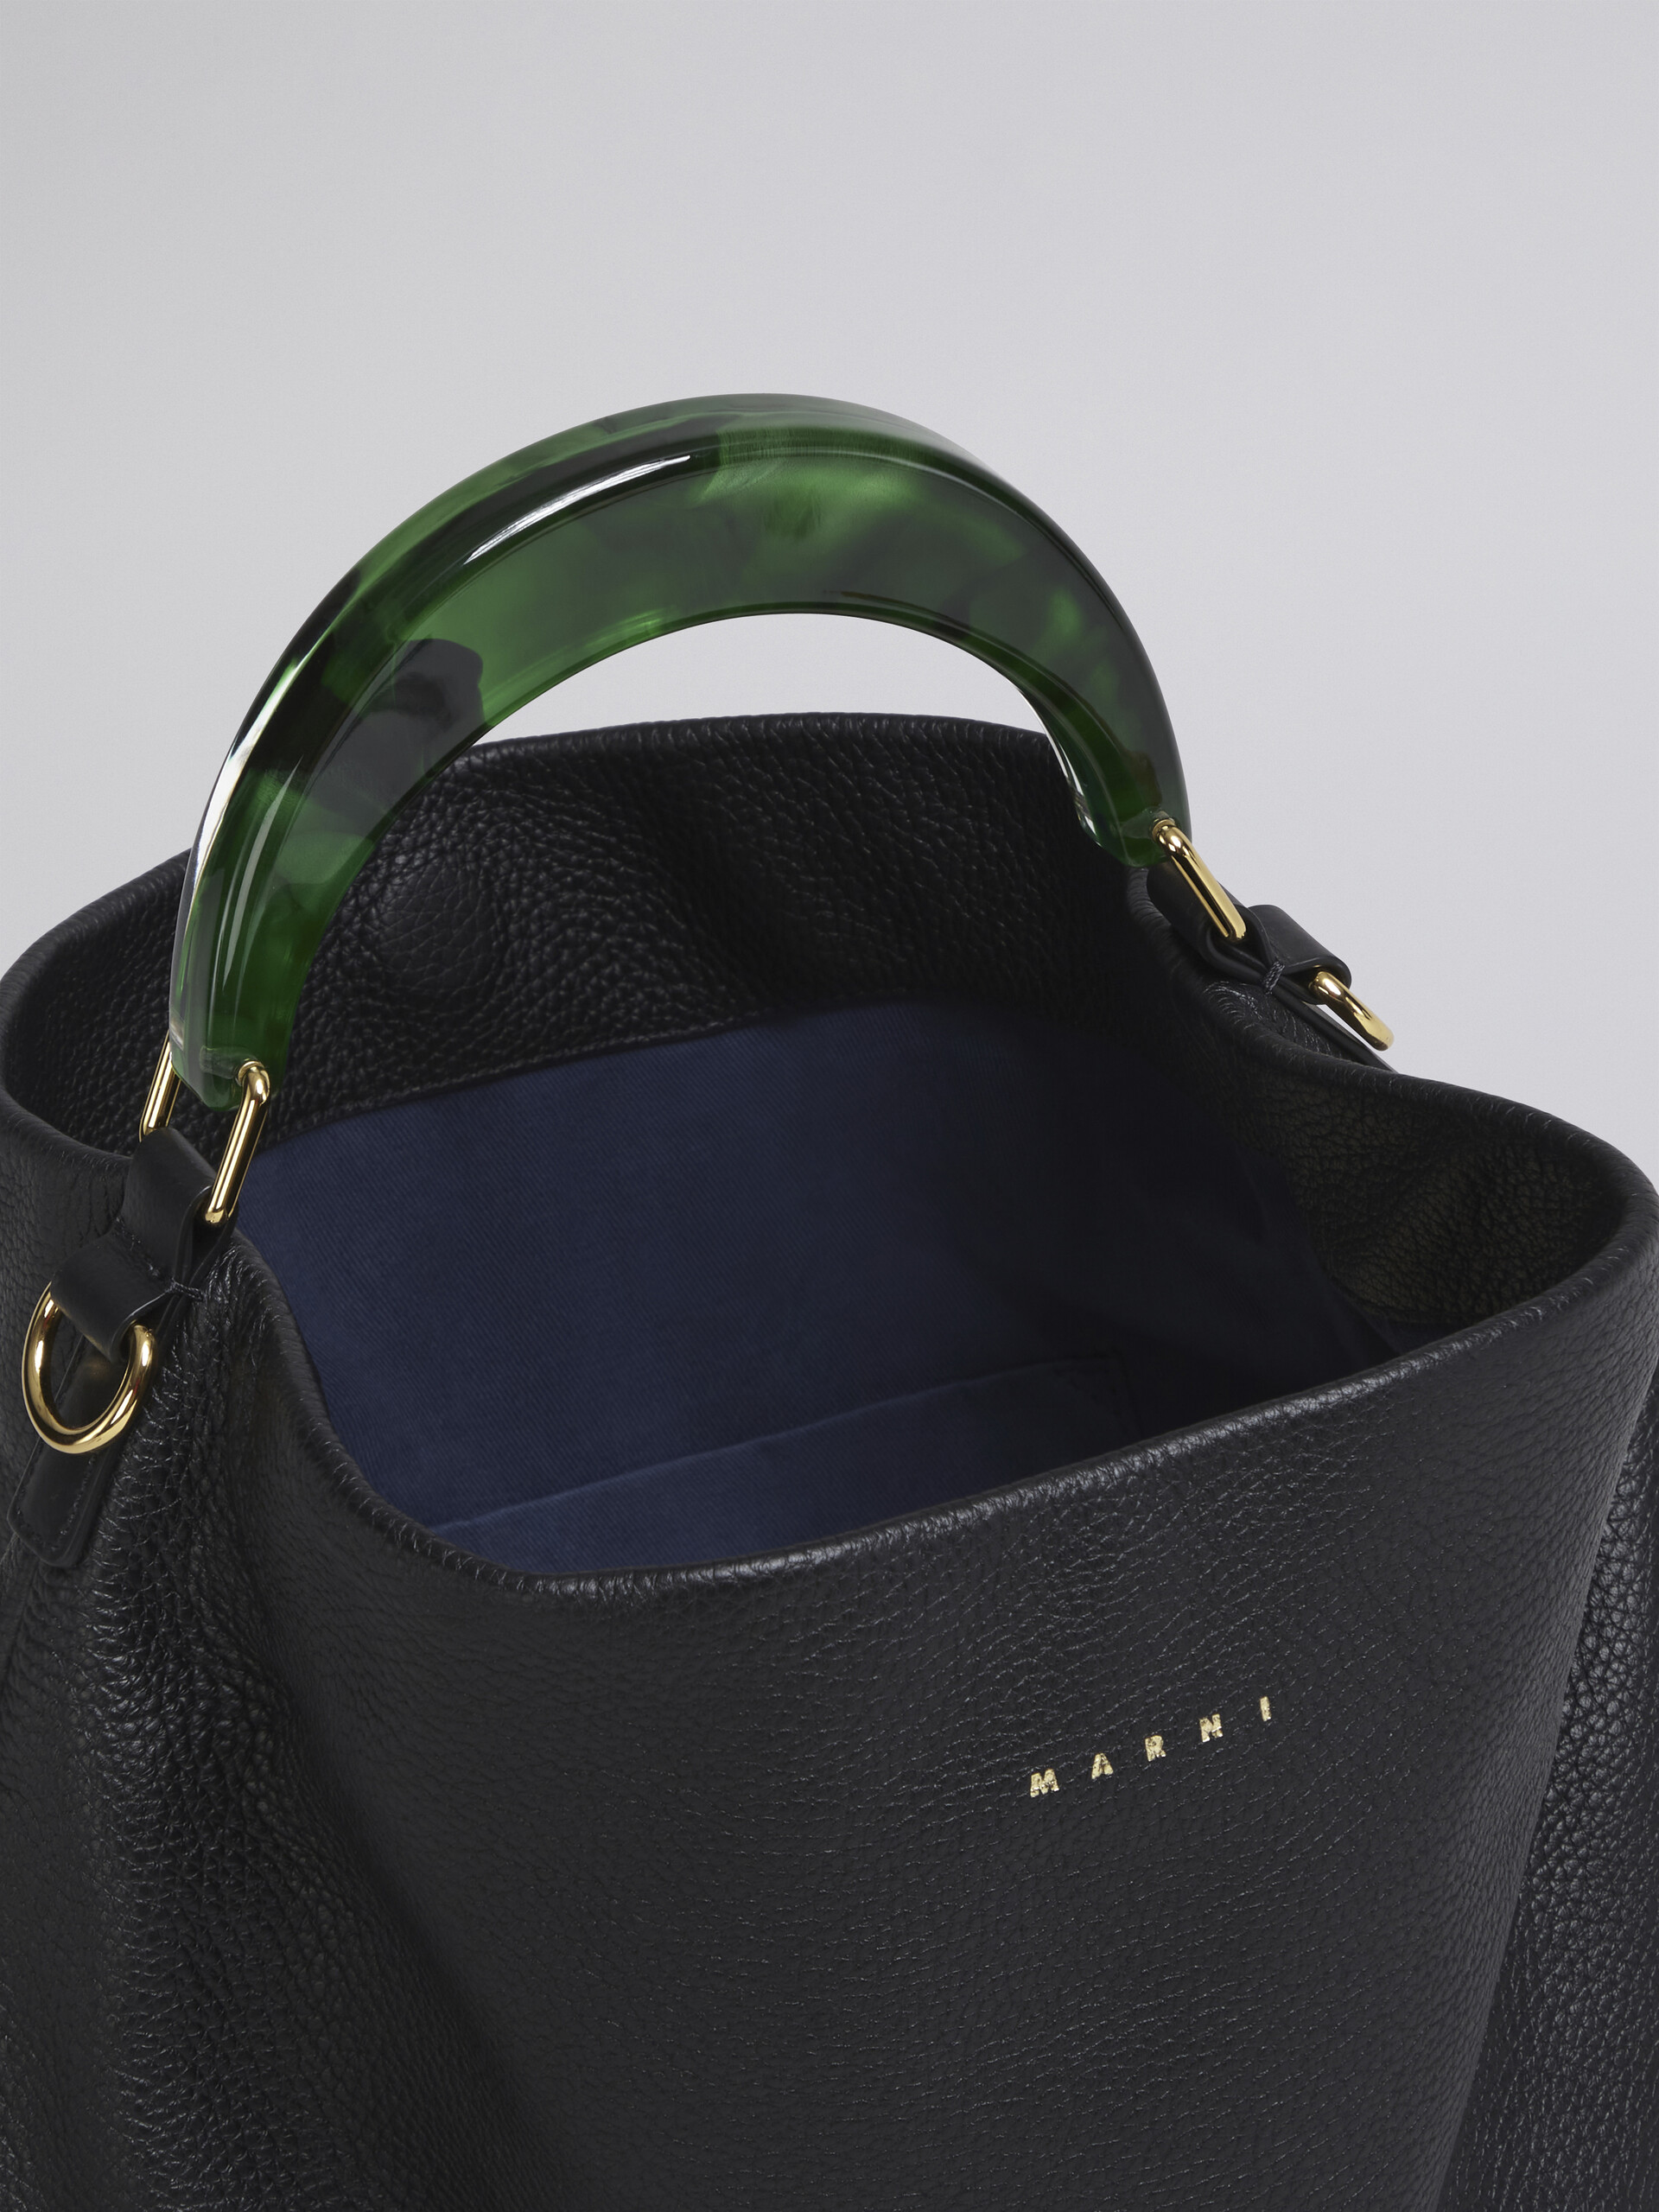 Venice Medium Bag in black leather - Shoulder Bags - Image 4